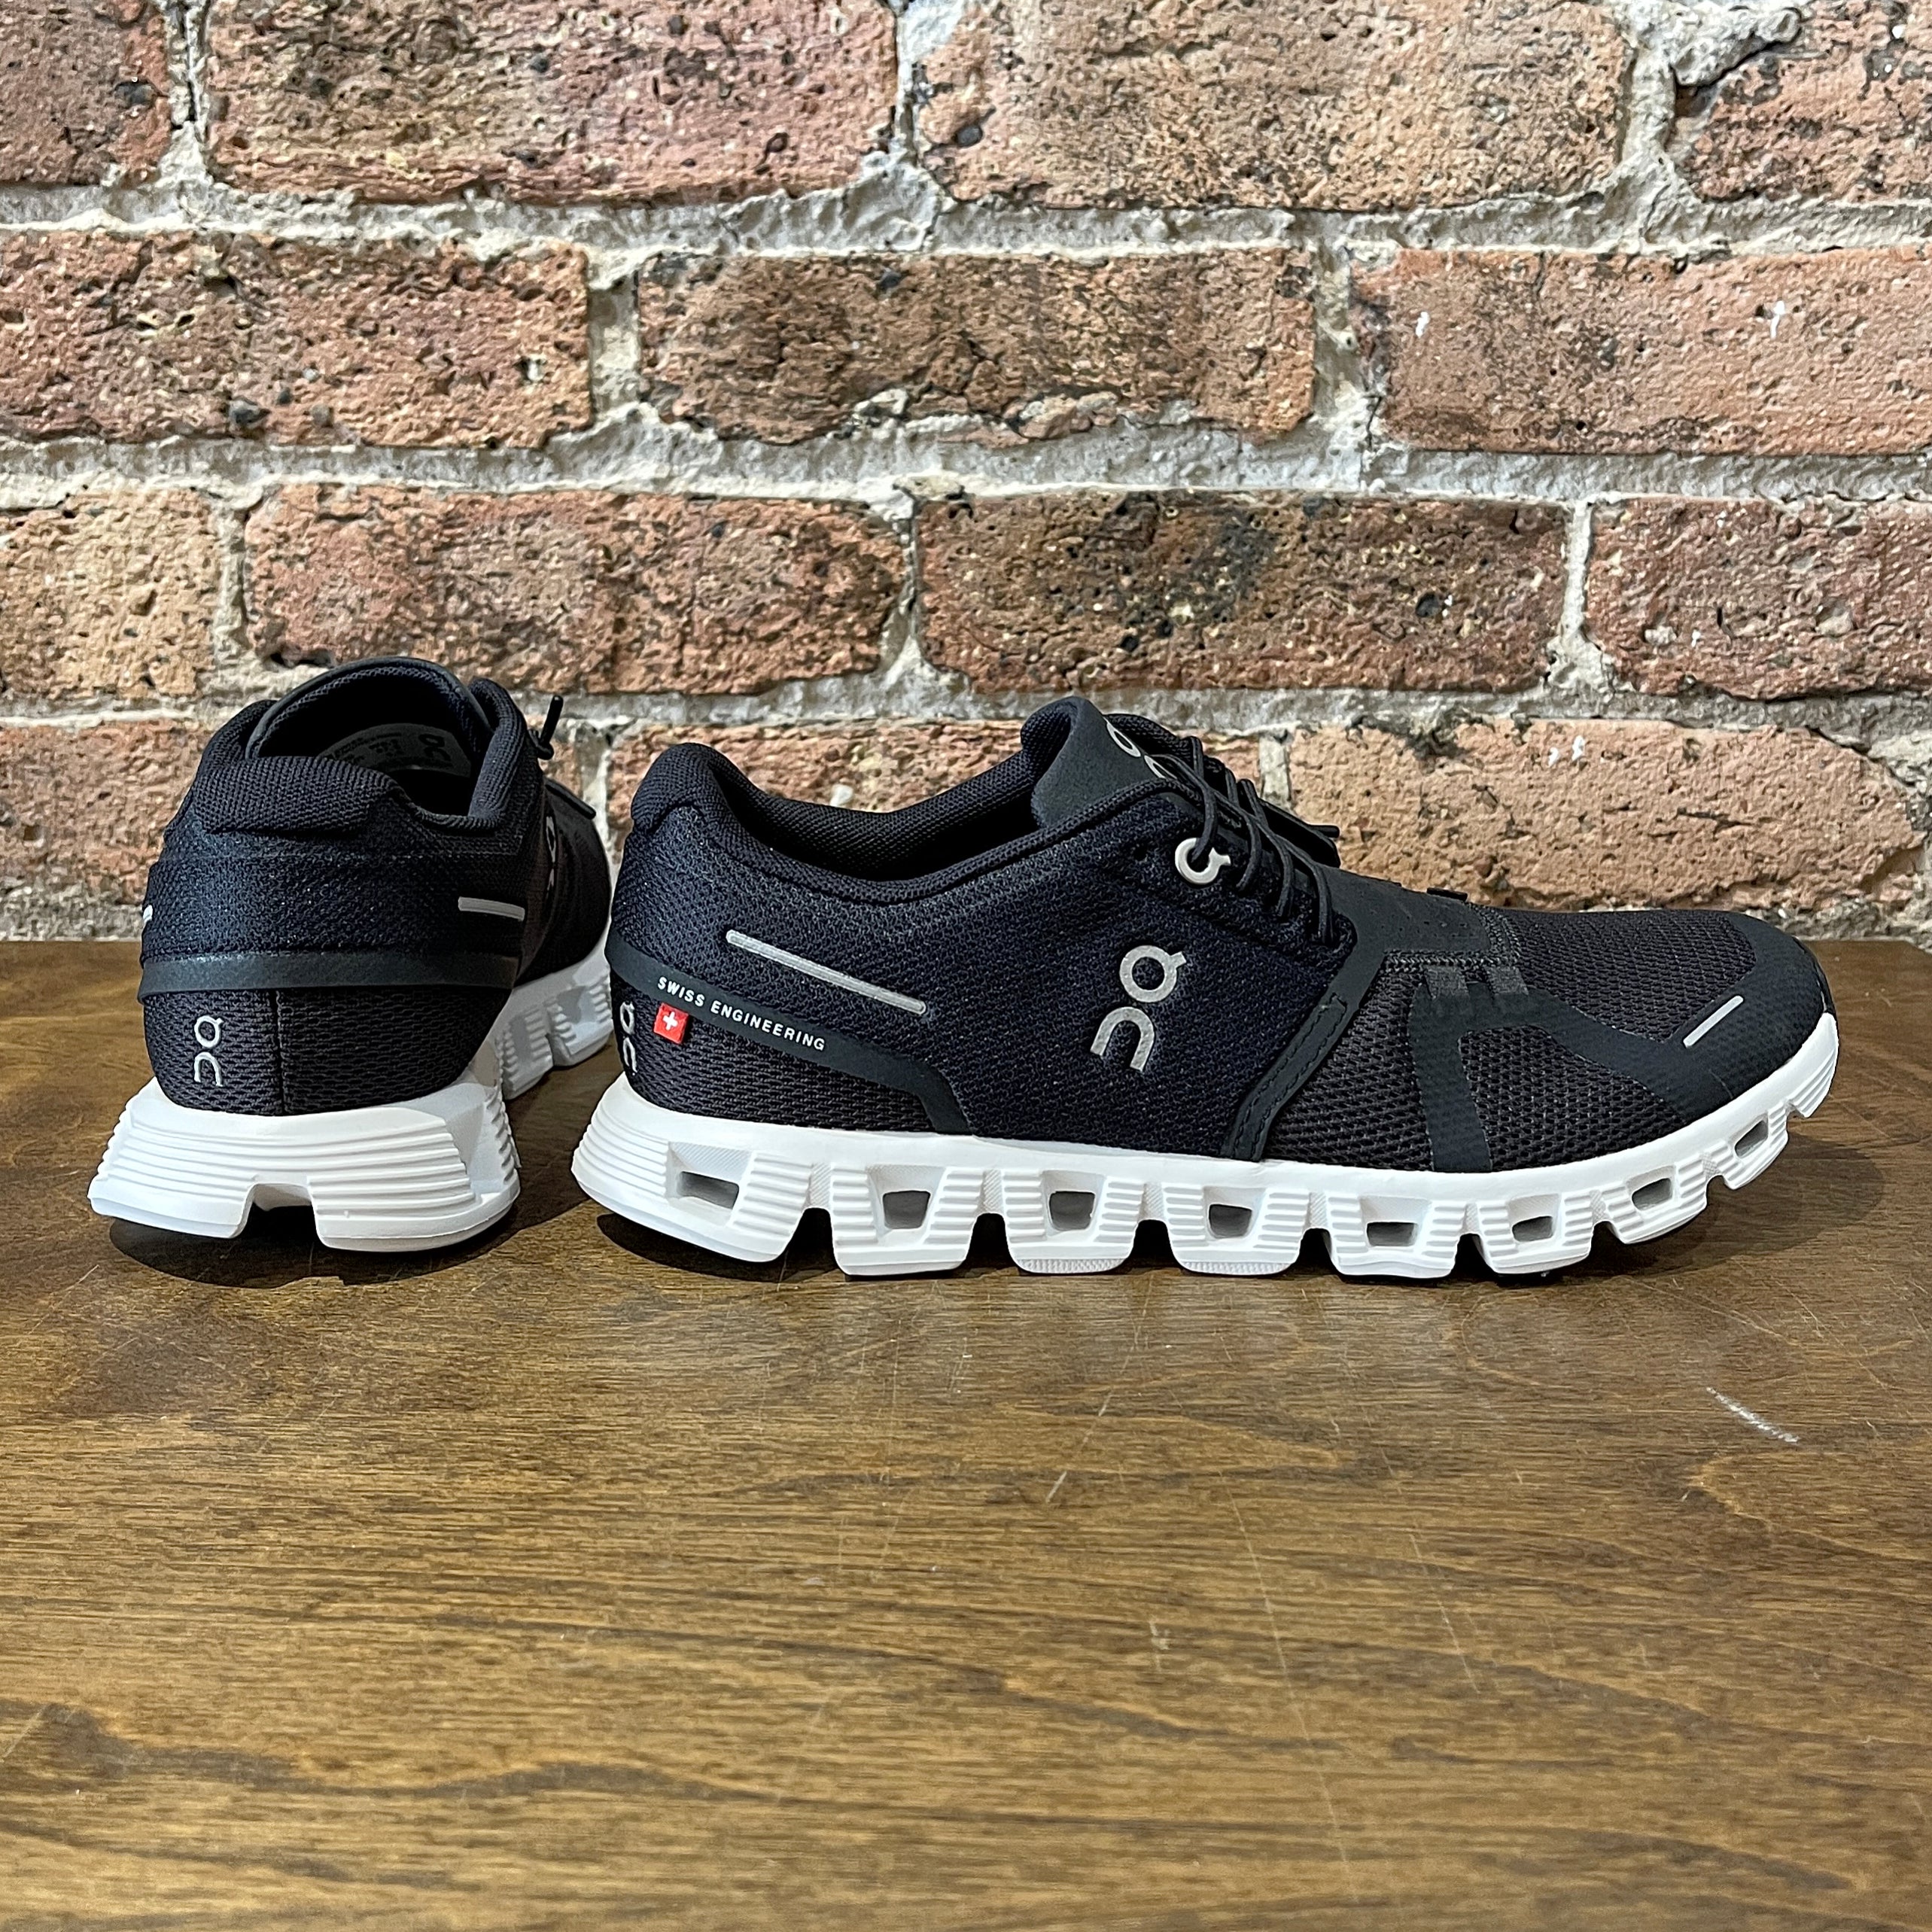 Cloud 5 sneakers in black - On